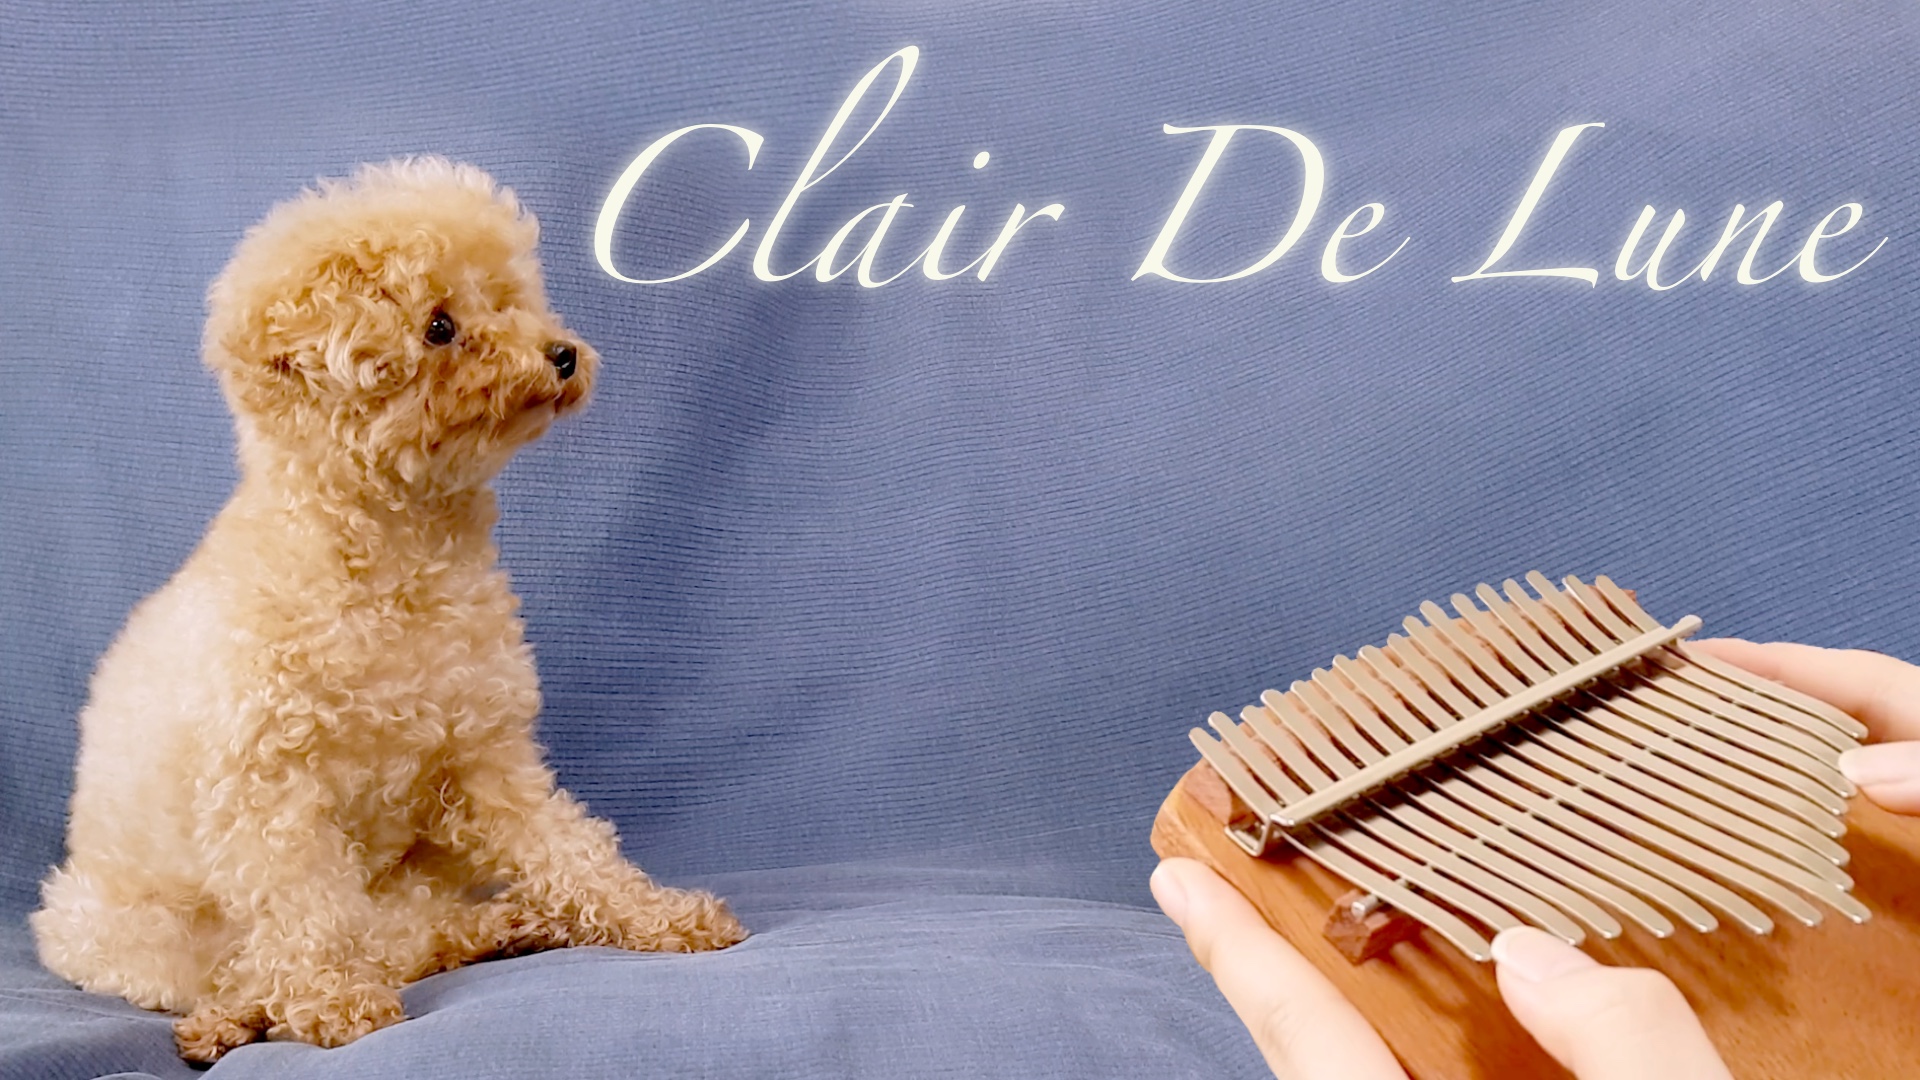 Clair de Lune – Claude Debussy – Seeds 34-key kalimba cover – Eva